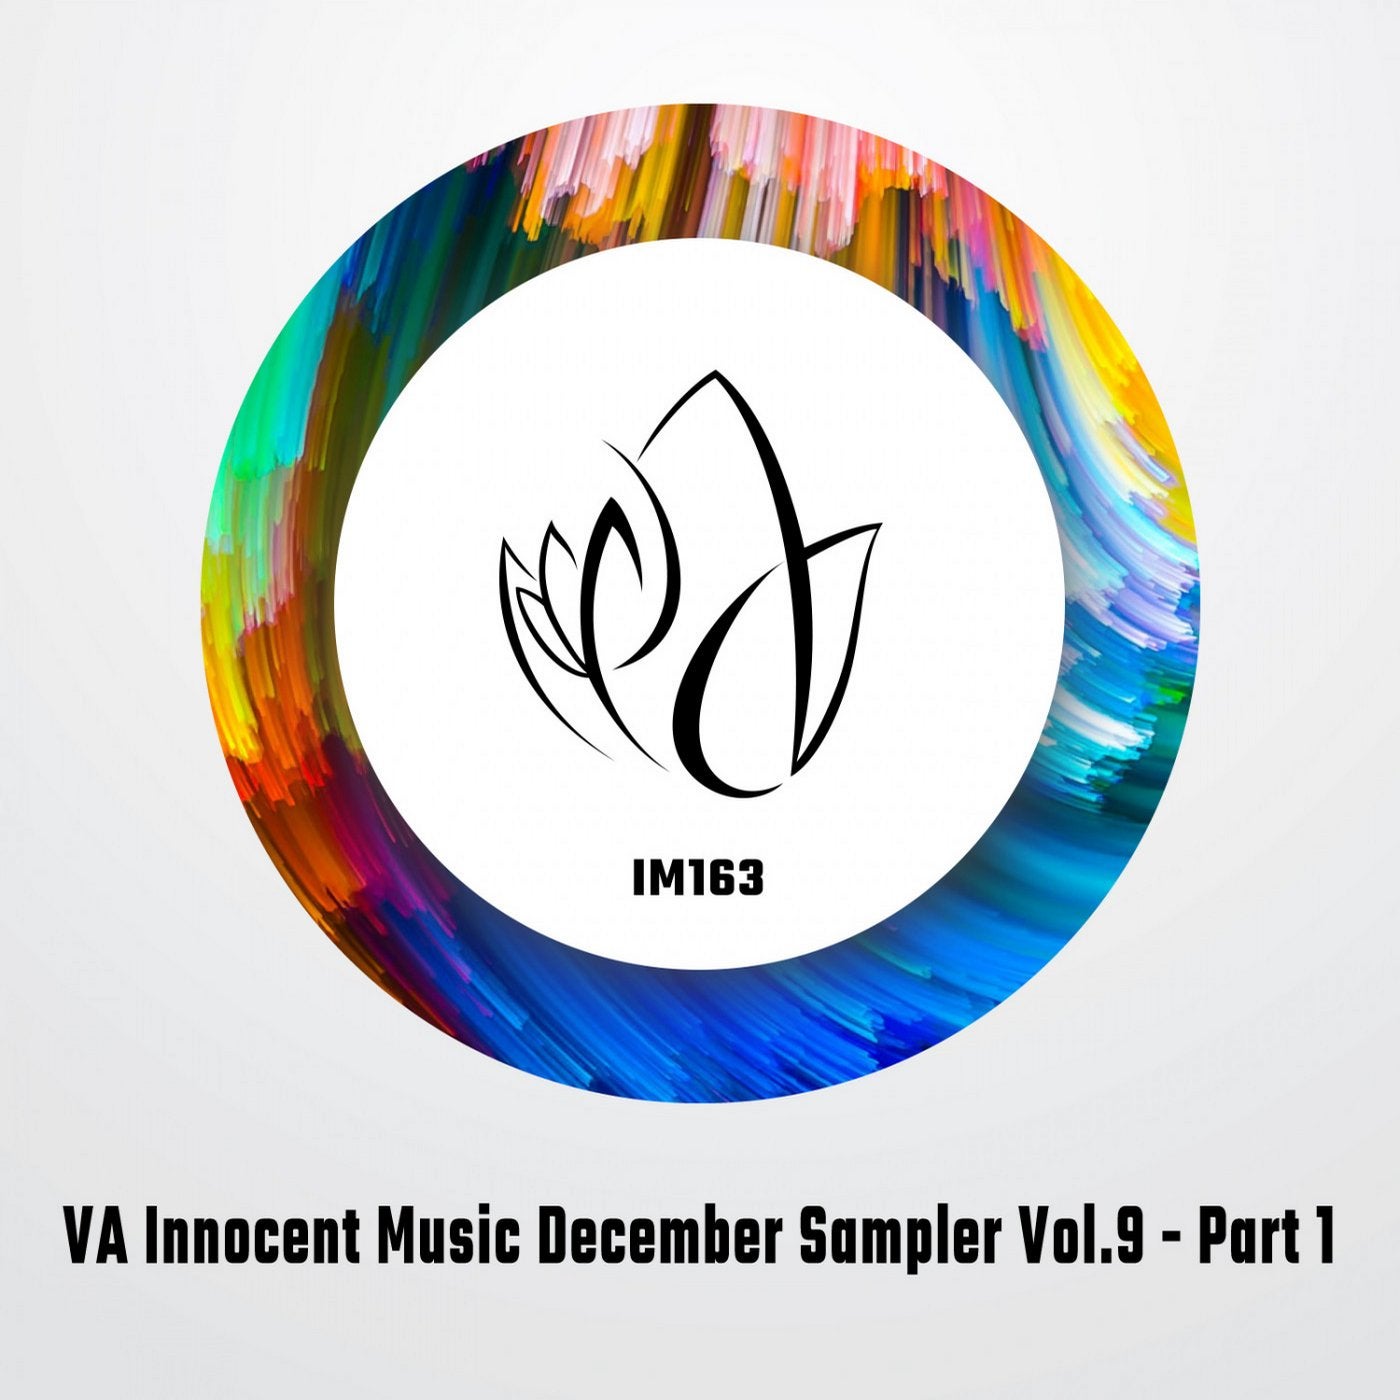 VA Innocent Music December Sampler Vol.9 - Part 1